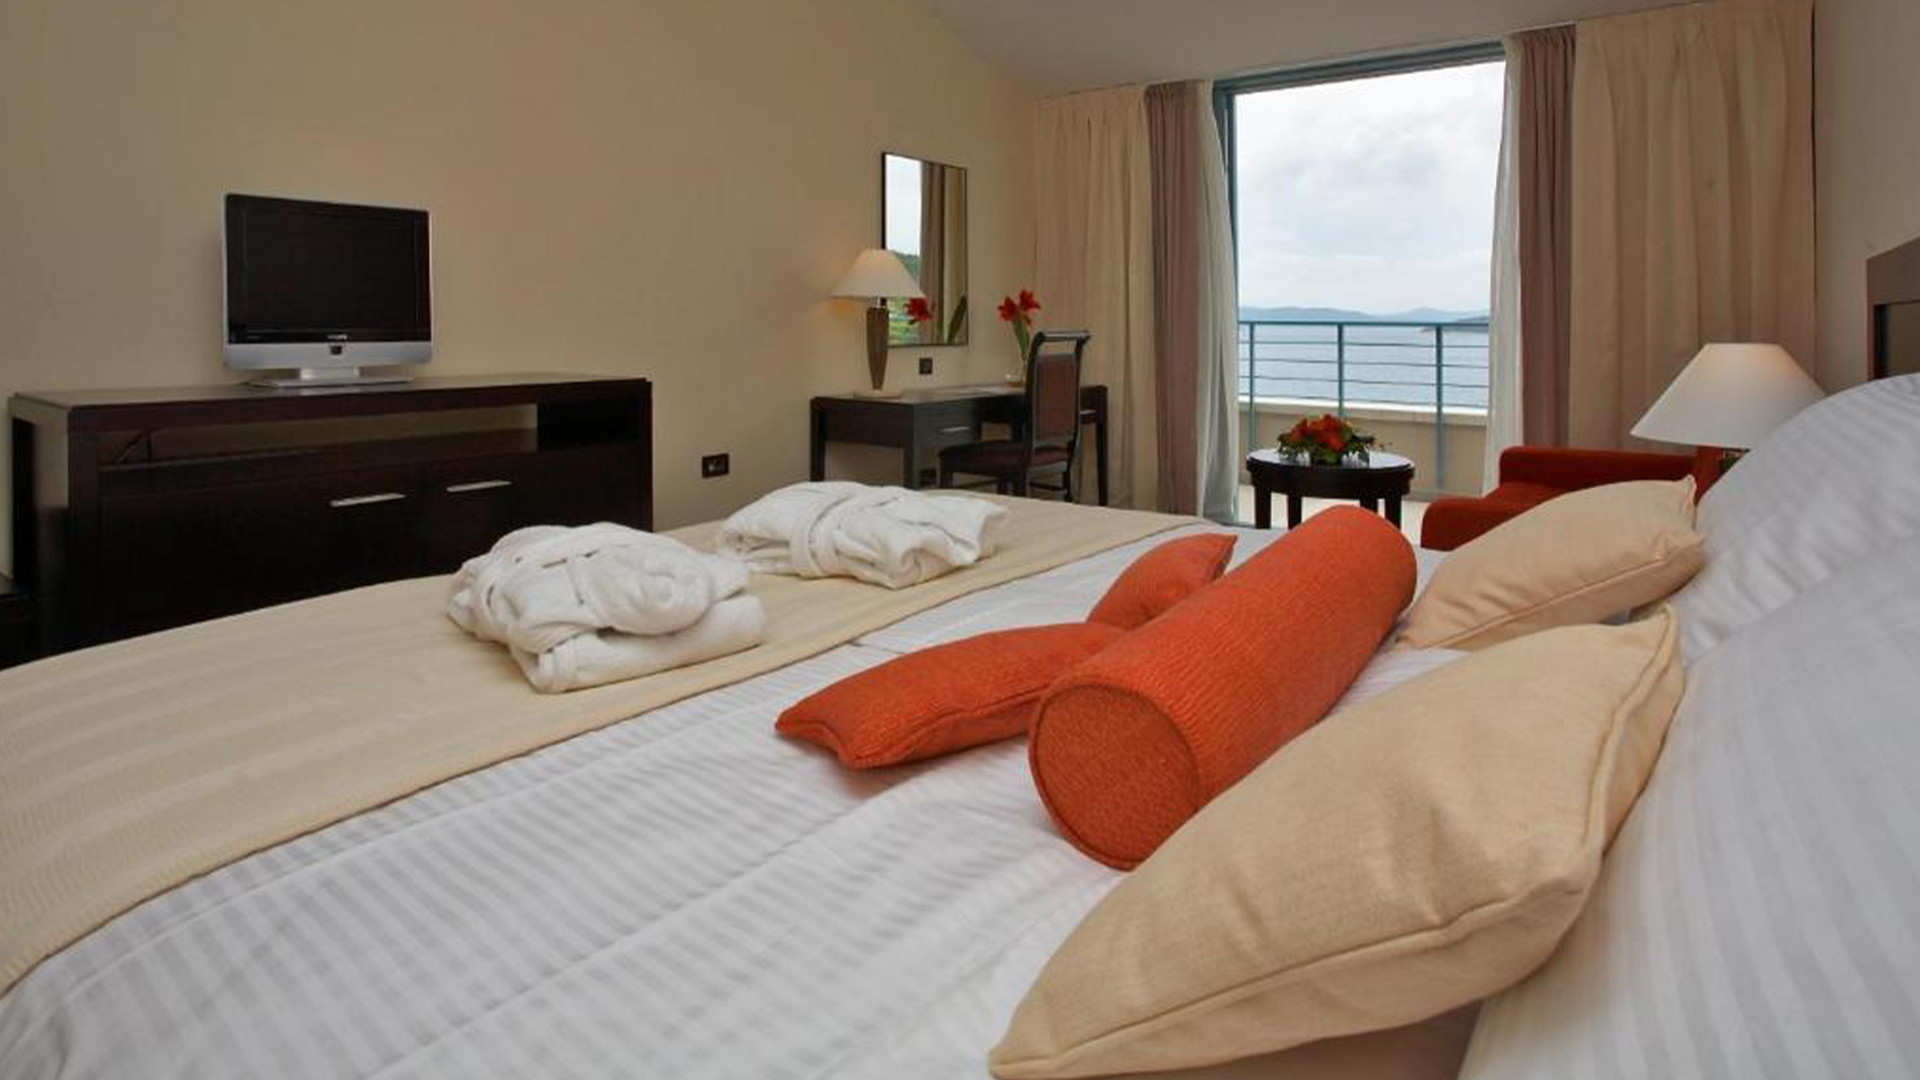 Luksuzan odmor s 5***** u Admiral Grand Hotelu s pogledom na more u srcu sezone